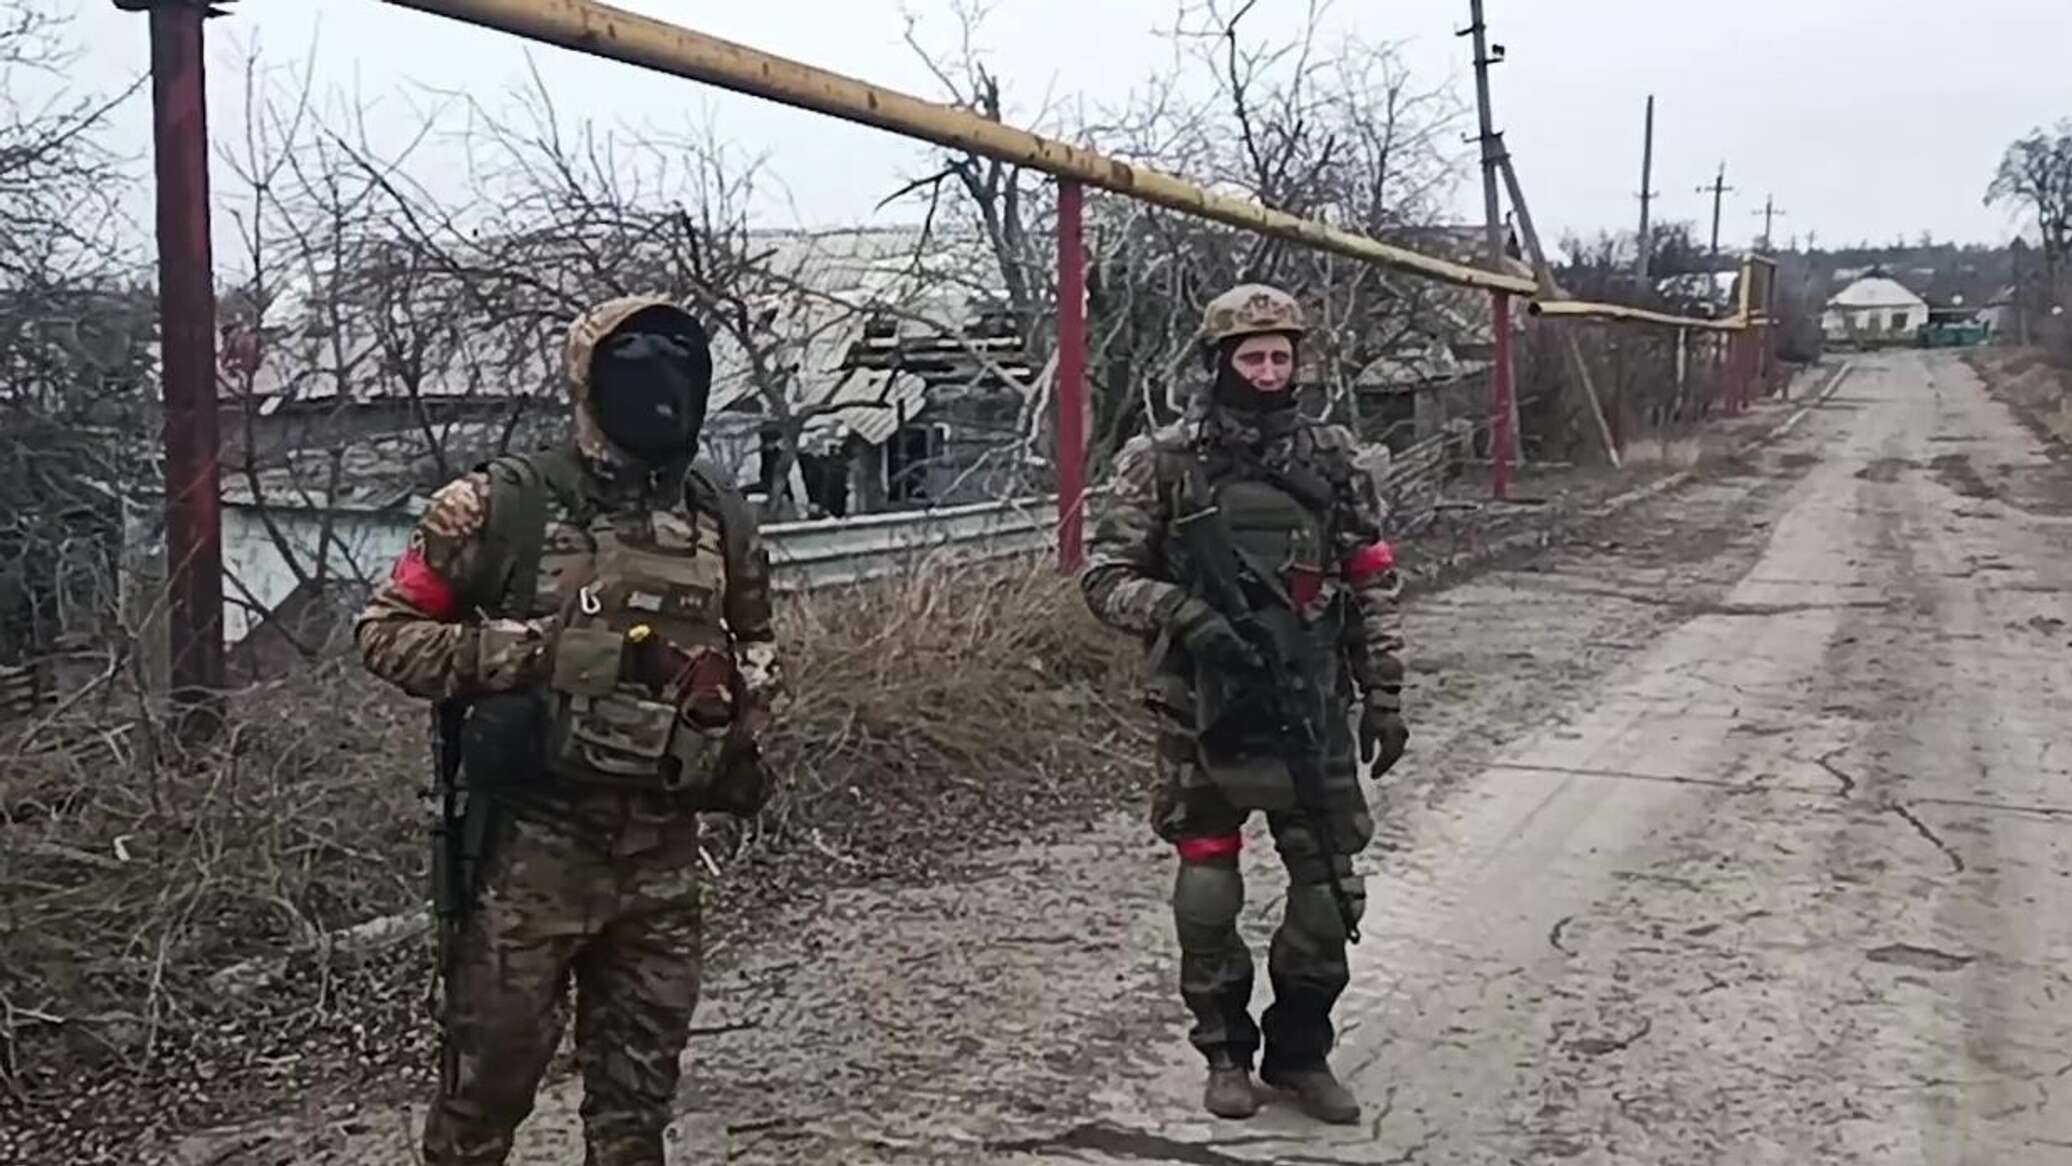 القوات الروسية تحرر بلدة بوغدانوفكا في جمهورية دونيتسك الشعبية